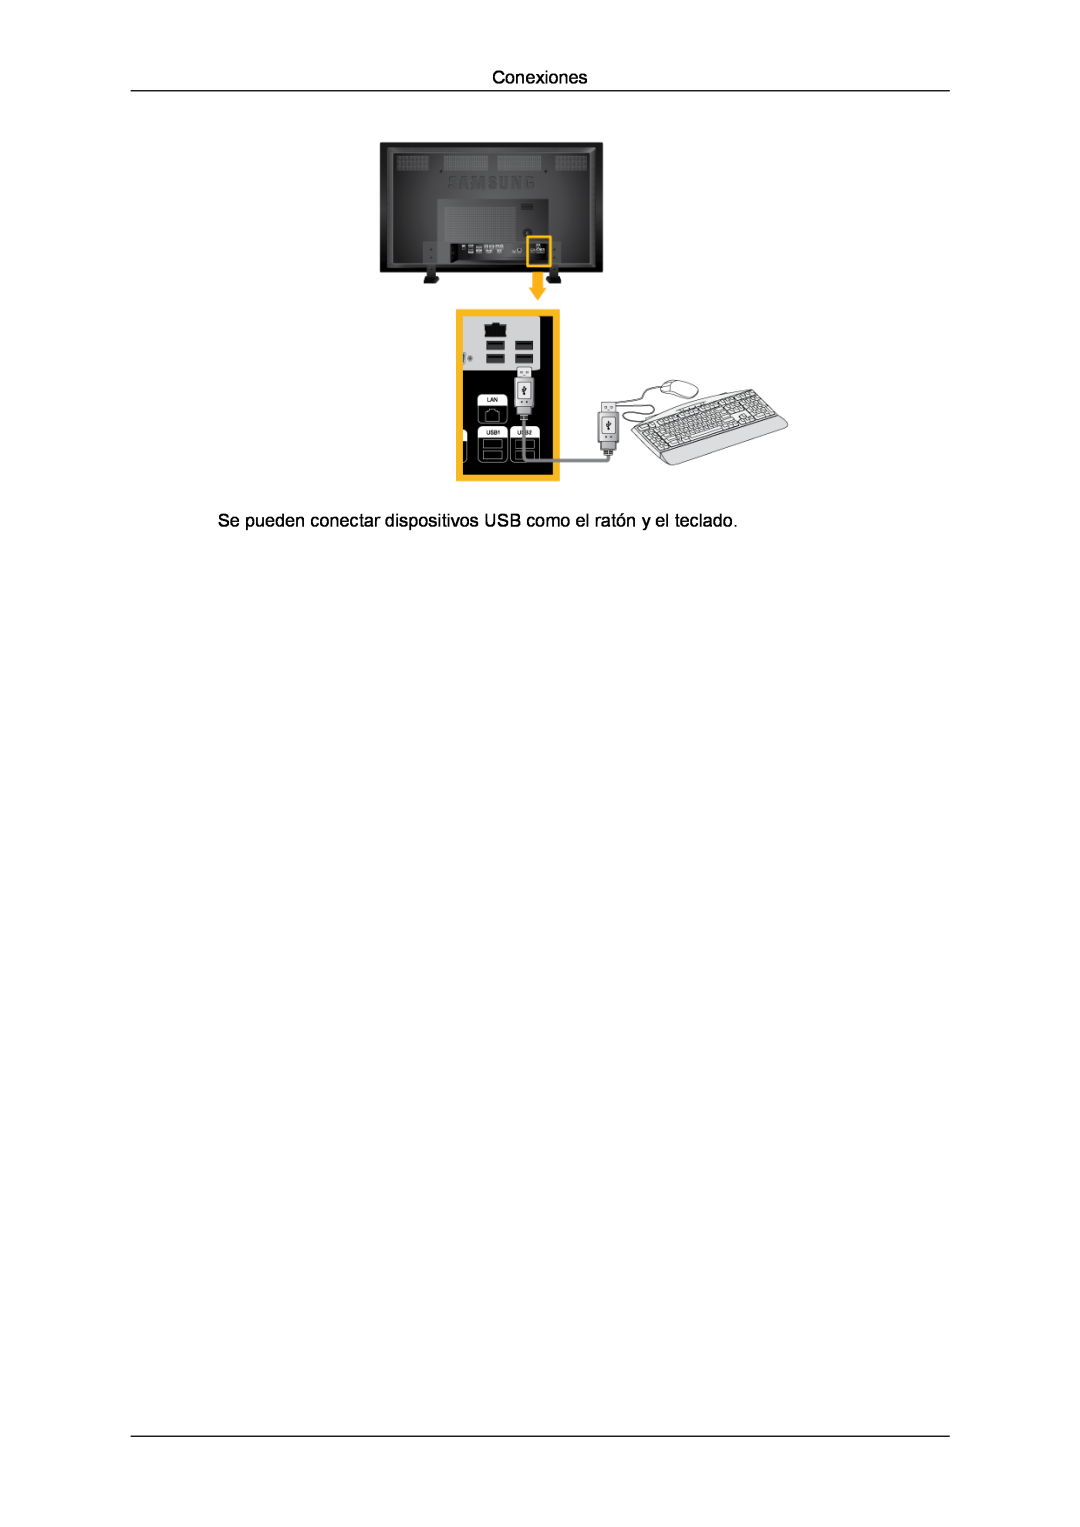 Samsung LH82TCUMBG/EN, LH70TCUMBG/EN manual Conexiones, Se pueden conectar dispositivos USB como el ratón y el teclado 